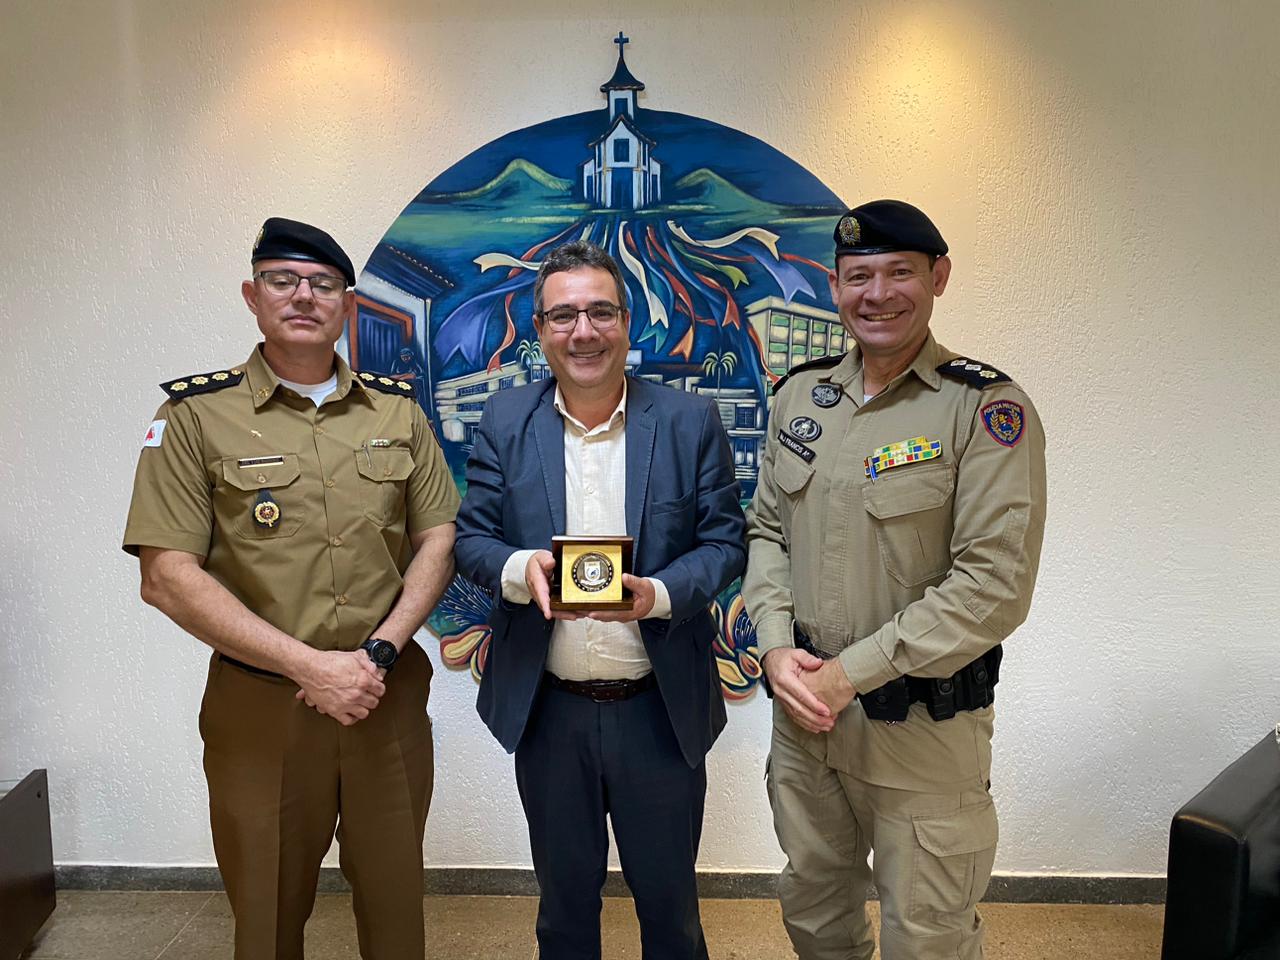 Reitor recebe honraria Challenge Coin da Academia de Polícia Militar de Minas Gerais